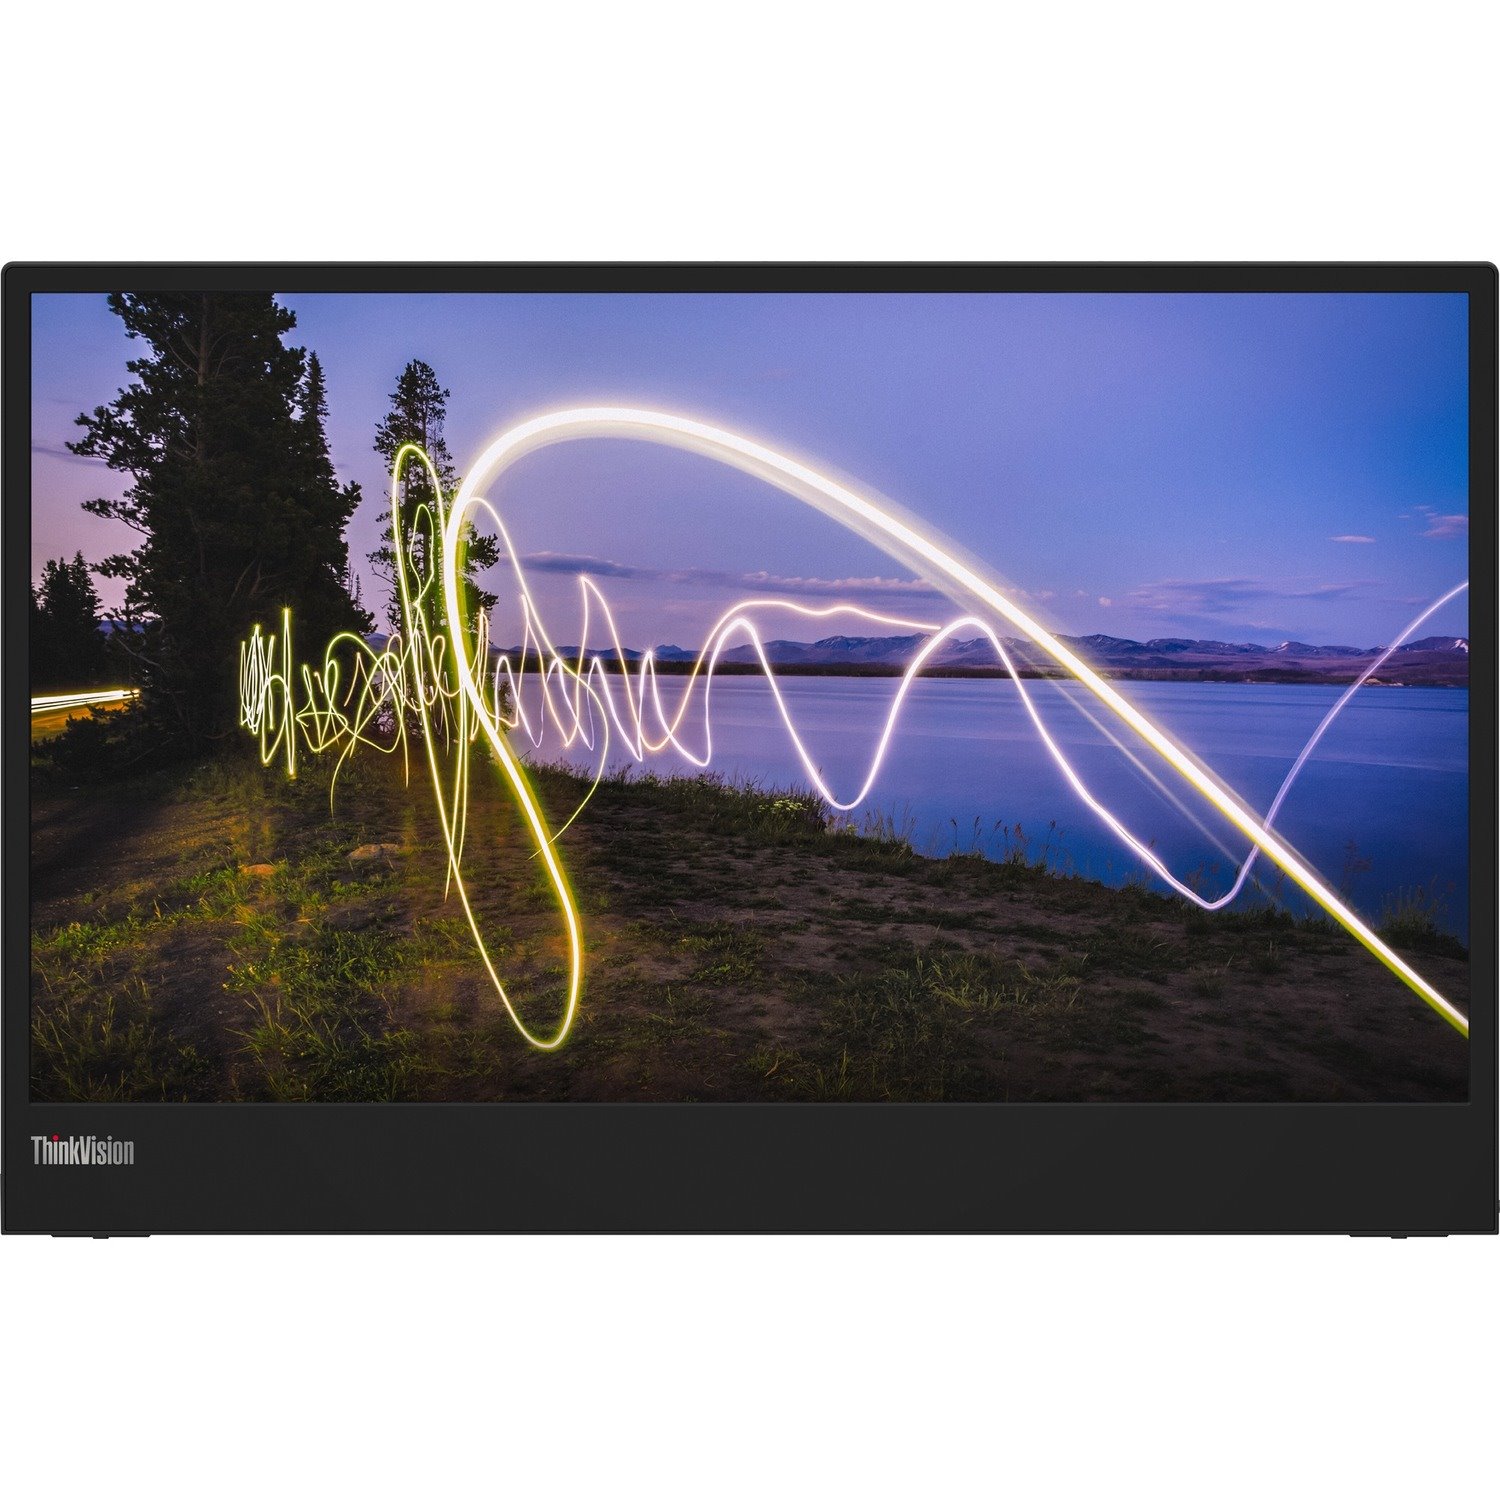 Lenovo ThinkVision M15 39.6 cm (15.6") Full HD WLED LCD Monitor - 16:9 - Raven Black